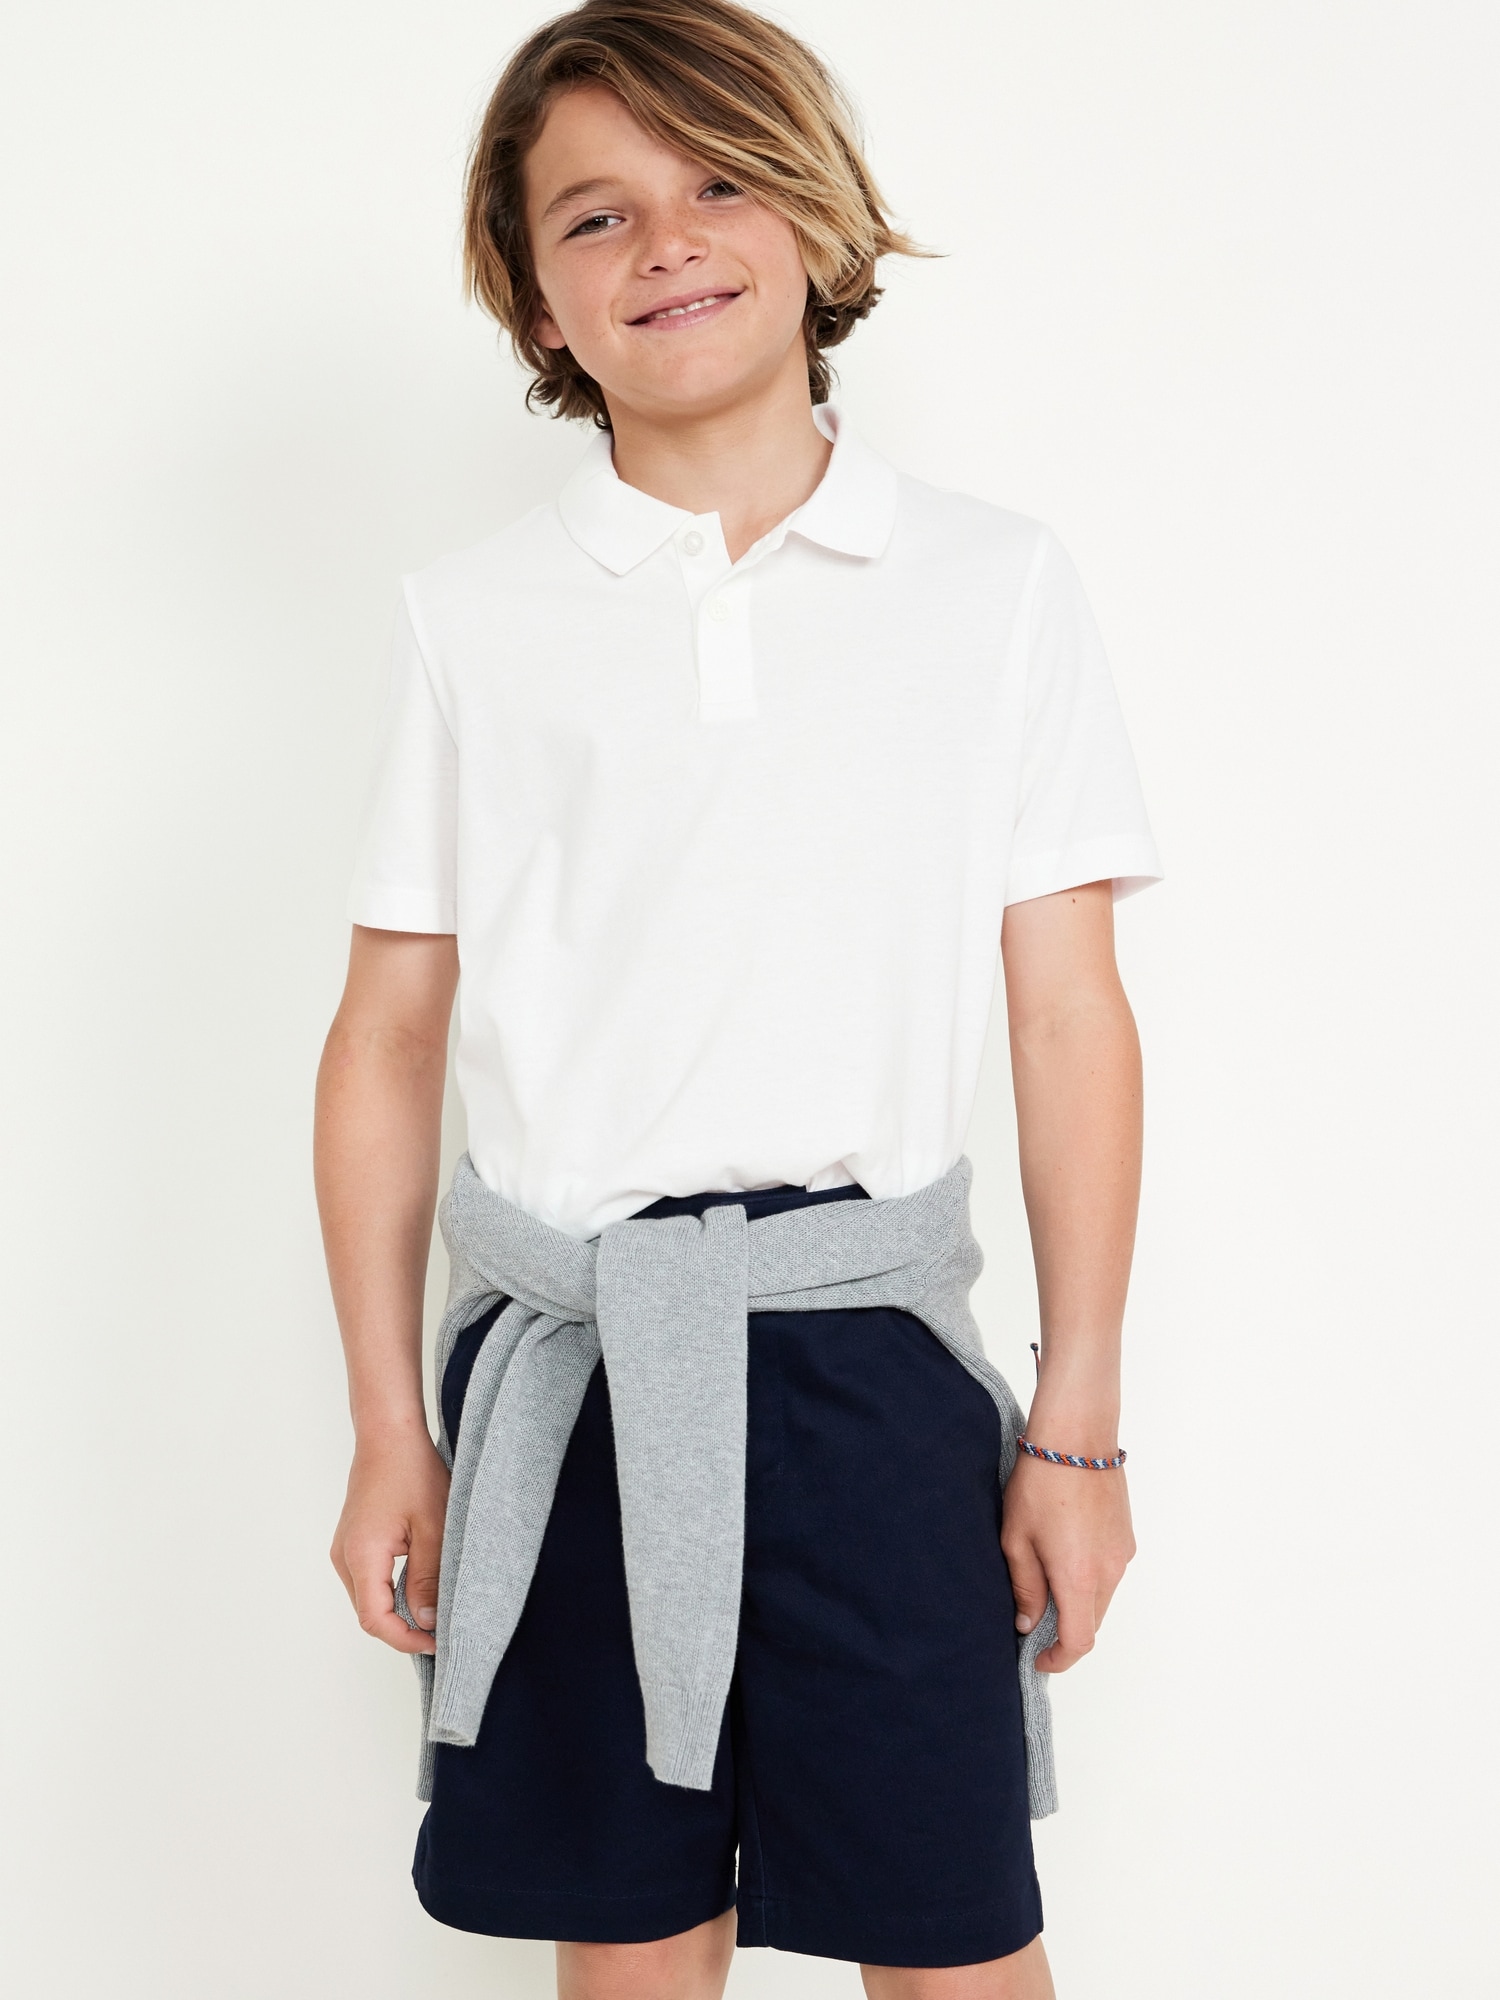 Short-Sleeve Polo Shirt for Boys